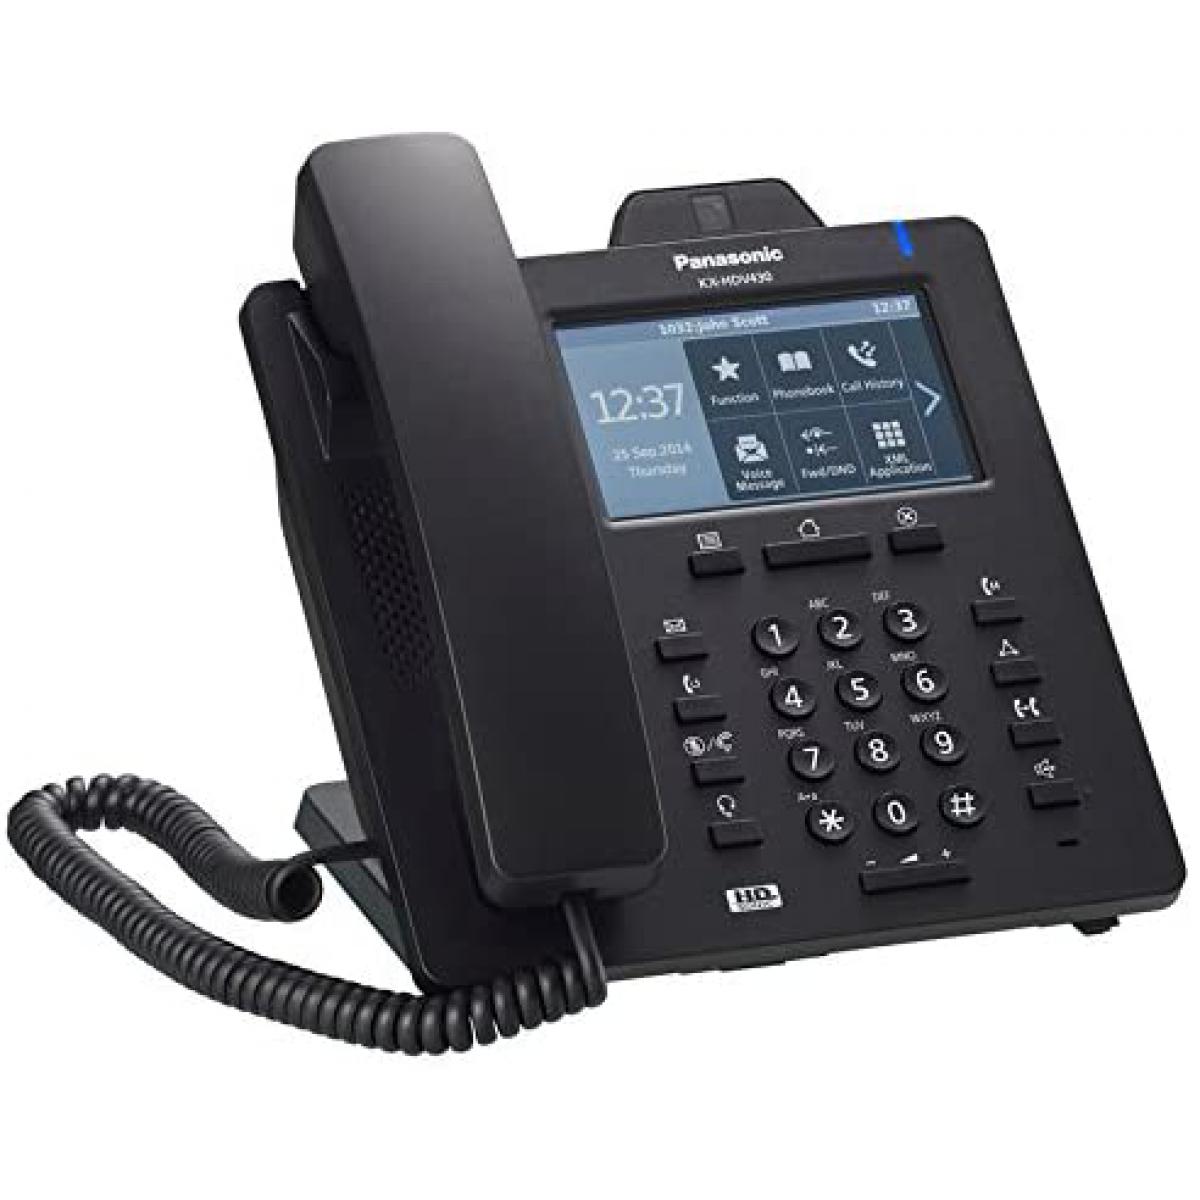 Panasonic - Rasage Electrique - telephone avec caméra vidéo et écran tactile noir - Téléphone fixe sans fil